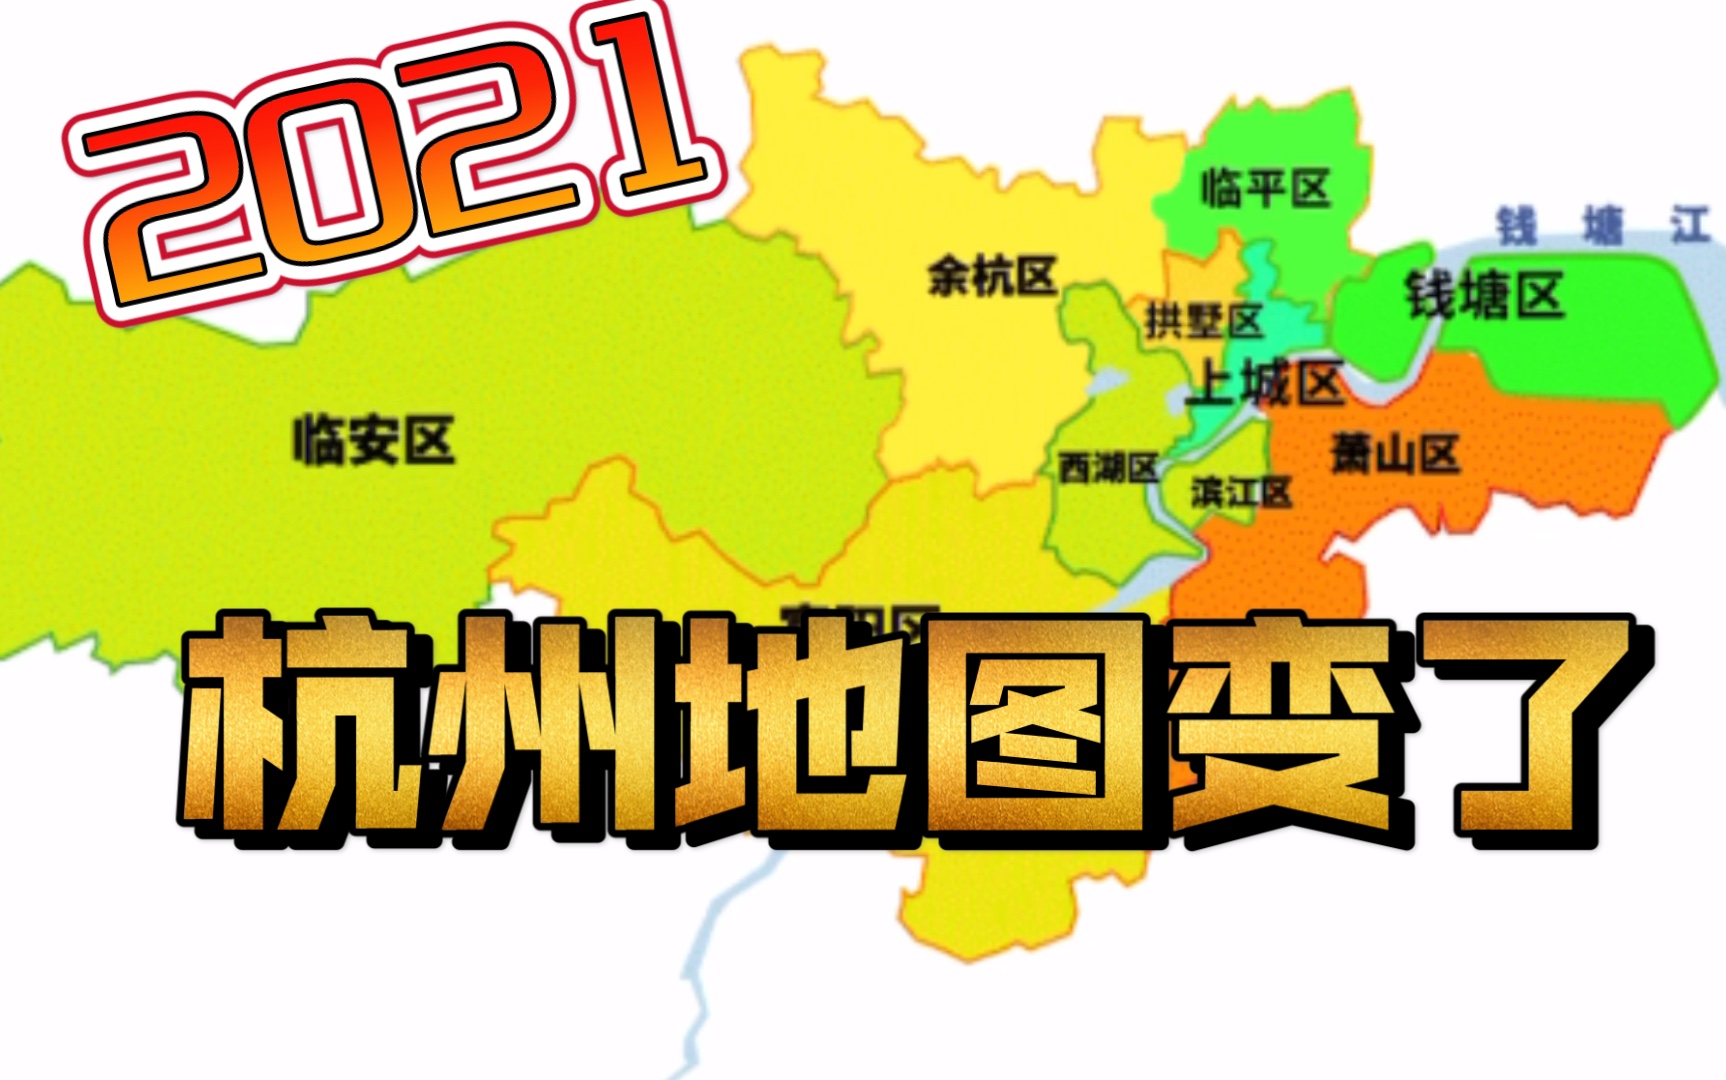 【纵横版图】2021杭州行政区划调整你好,钱塘 临平;再见,下城 江干